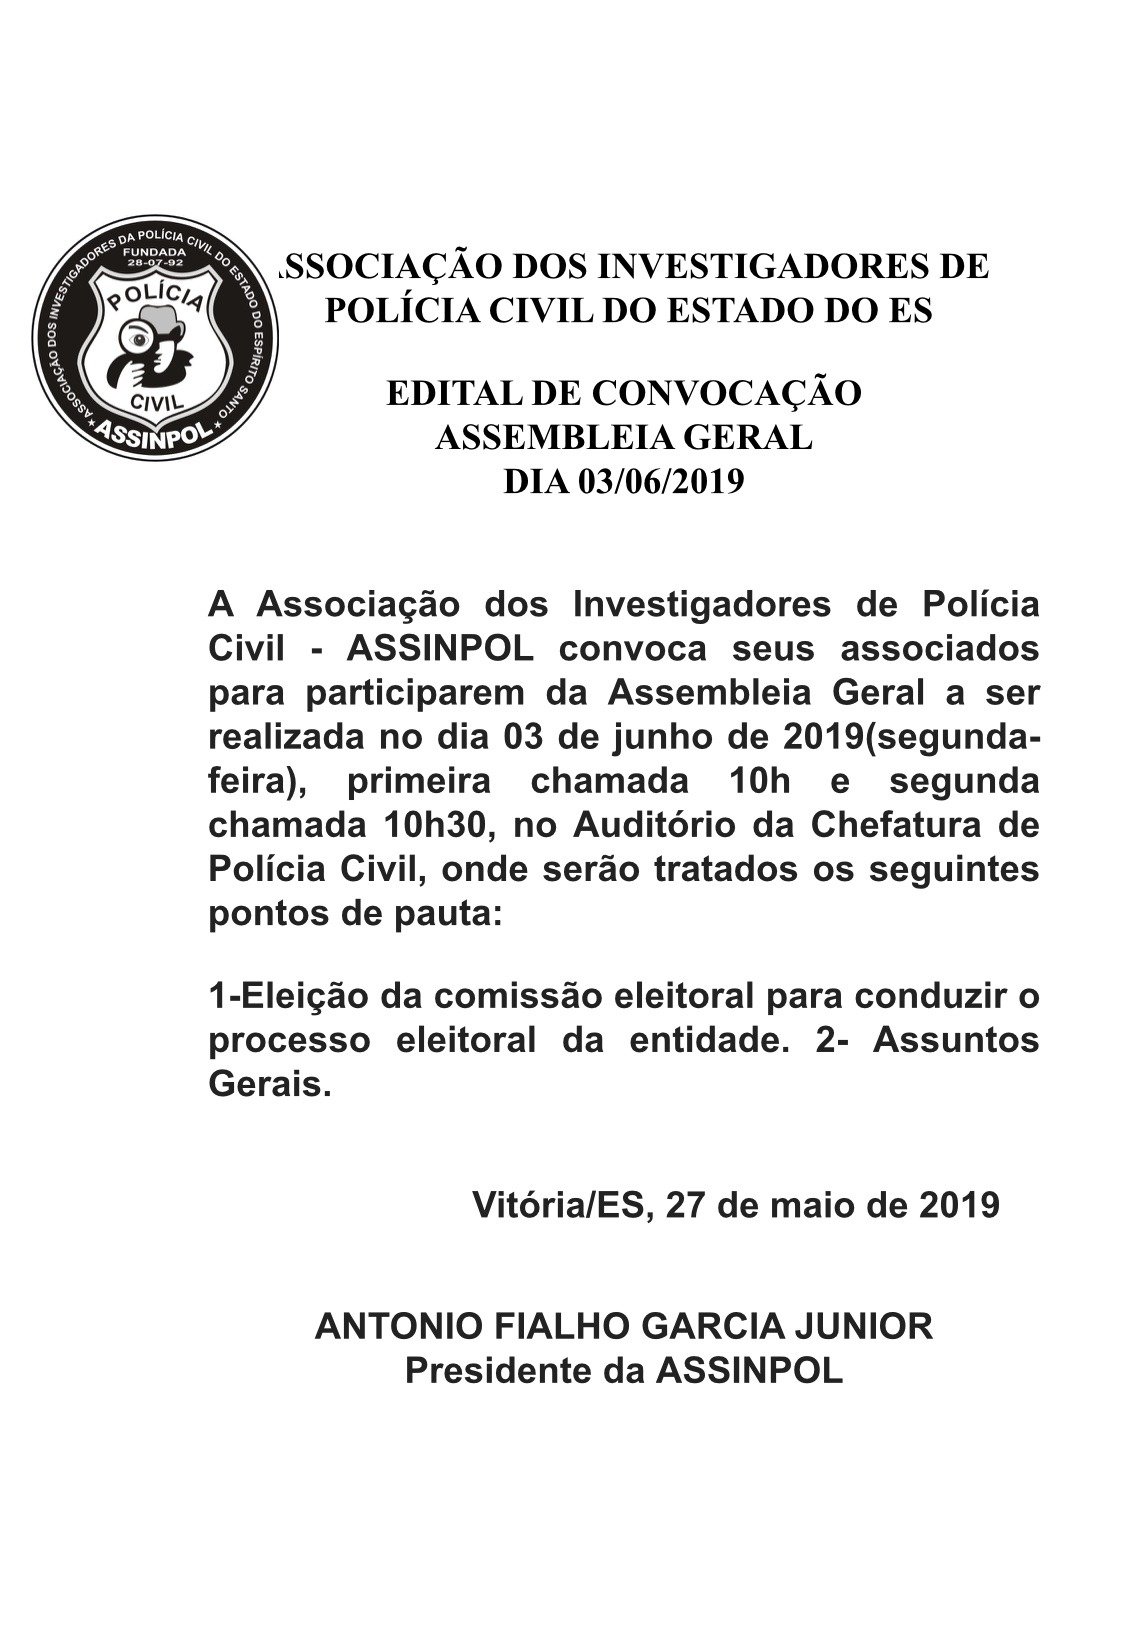 Edital Convocação Assembleia Geral Dia 03/06/2019